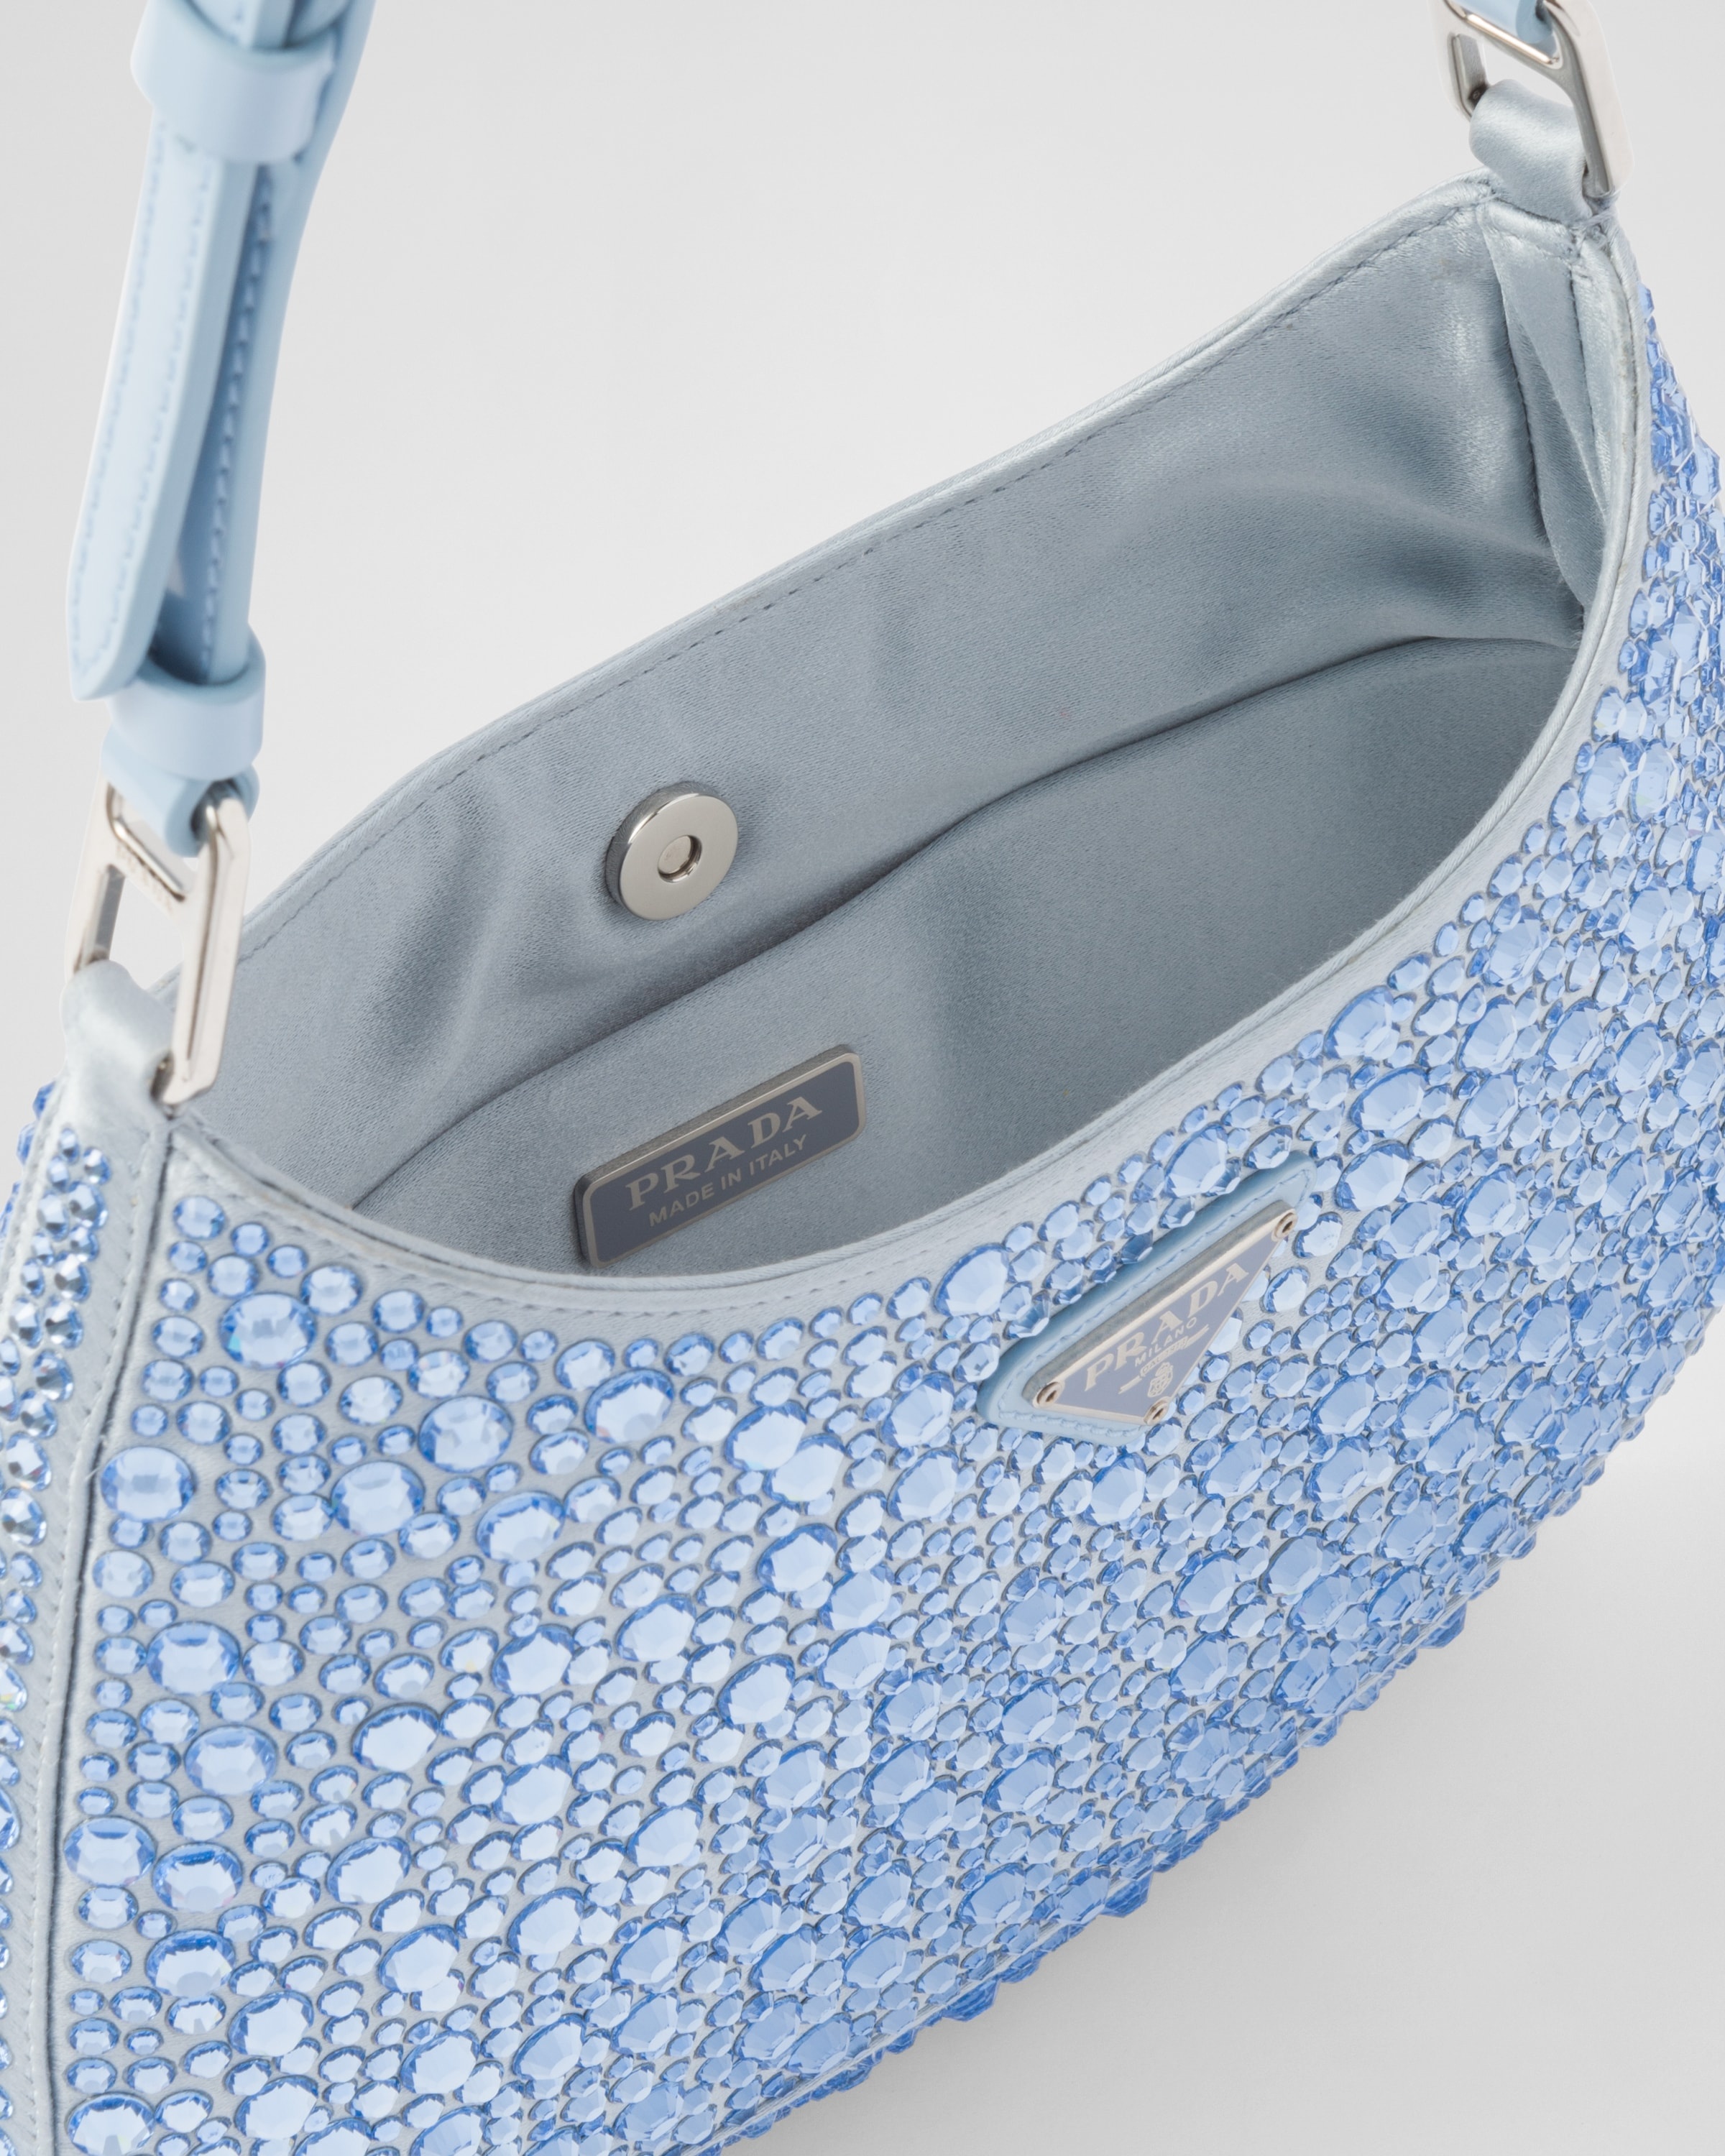 Prada Cleo satin bag with crystals - 5